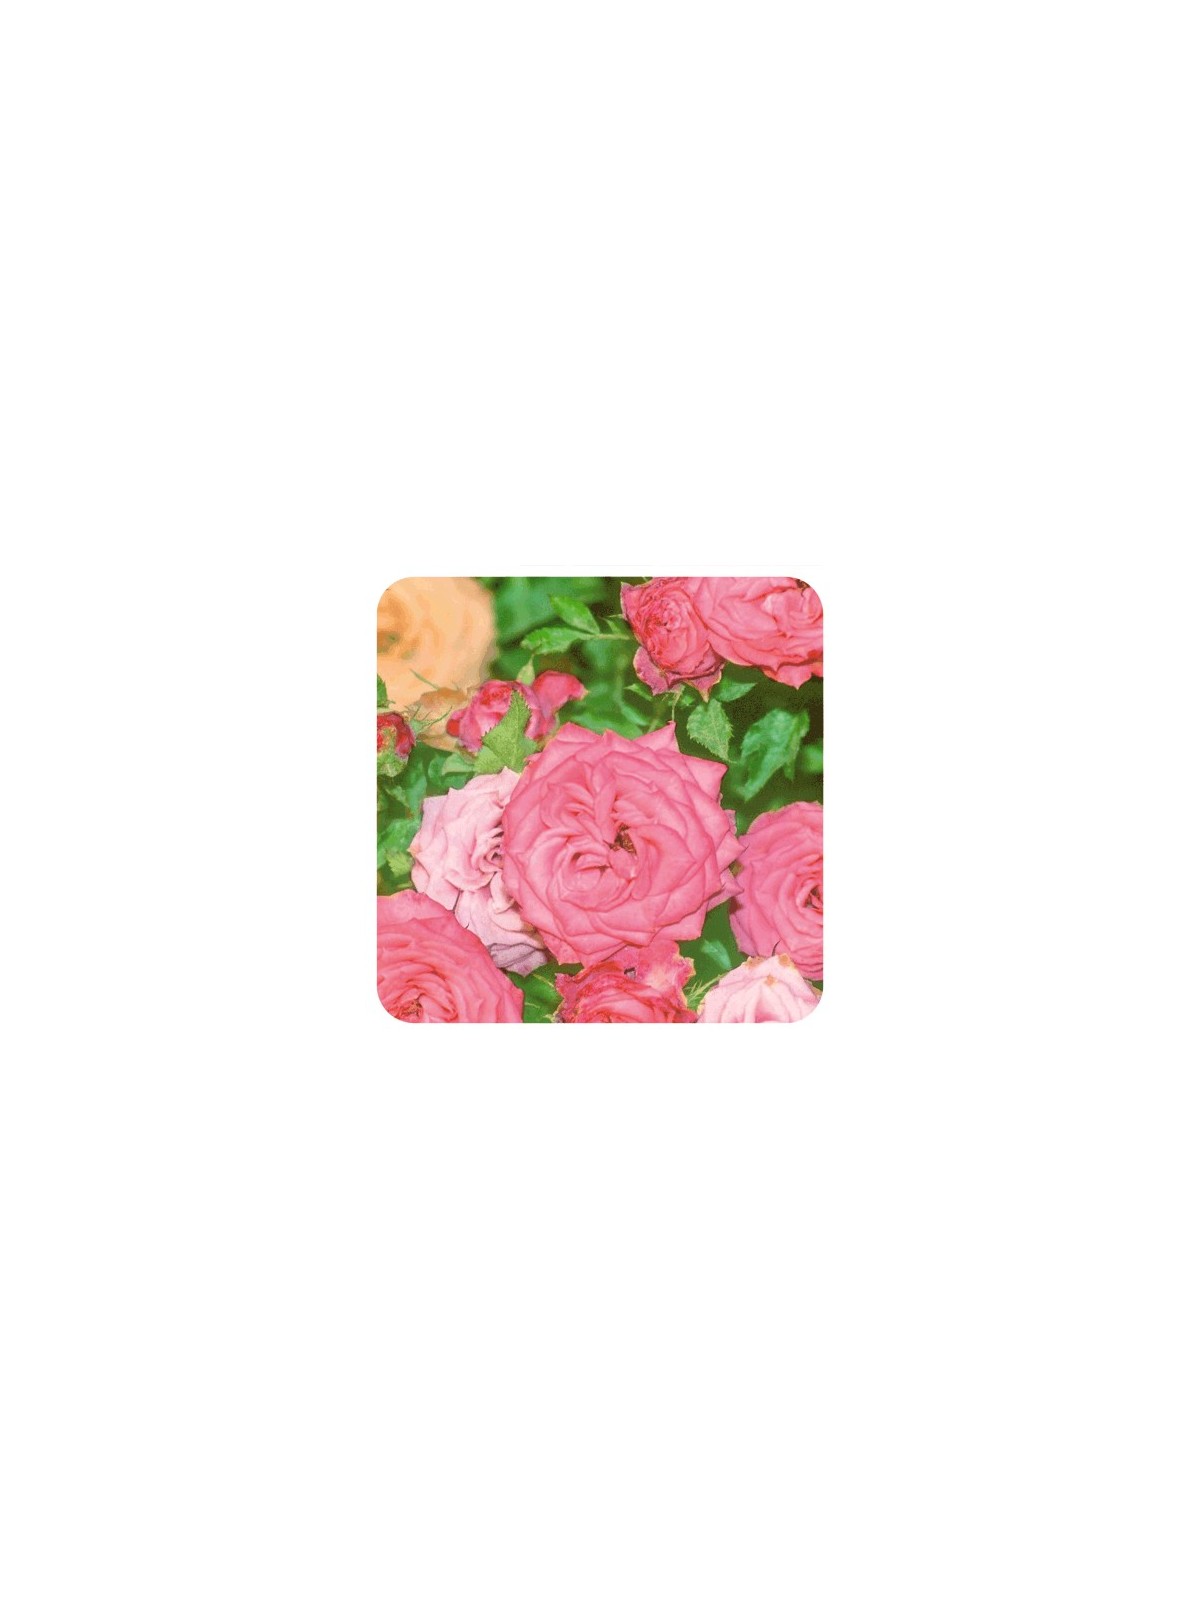 Rose de damas 2ml Huile Essentielle de Pranarom